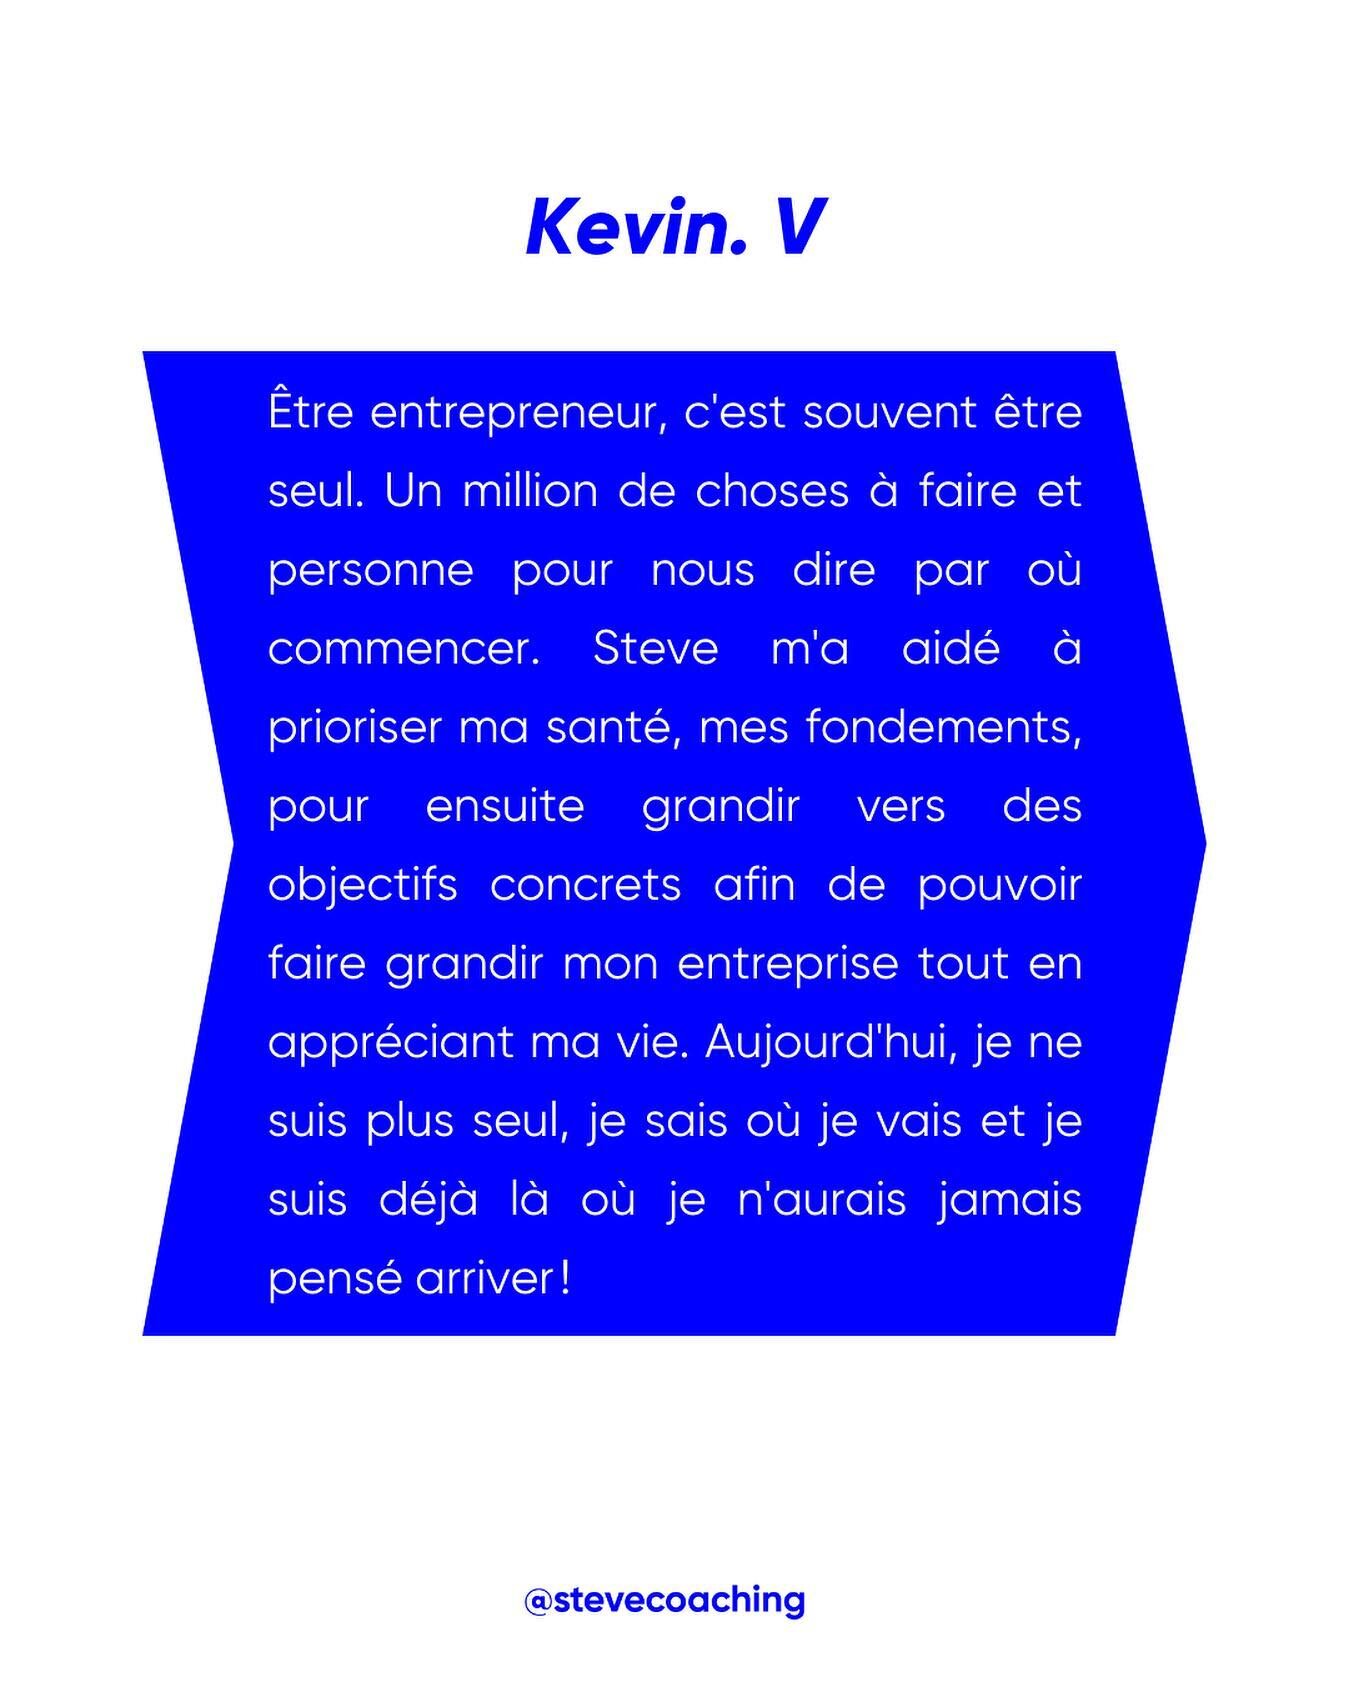 Si comme Kevin tu te sens seul(e) et que tu aimerais faire grandir ton entreprise tout en am&eacute;liorant ta qualit&eacute; de vie, envoie-moi un message !

#entrepreneur #entreprendre #entrepreneursuisse #entrepreneursuisseromande #entrepreneurval